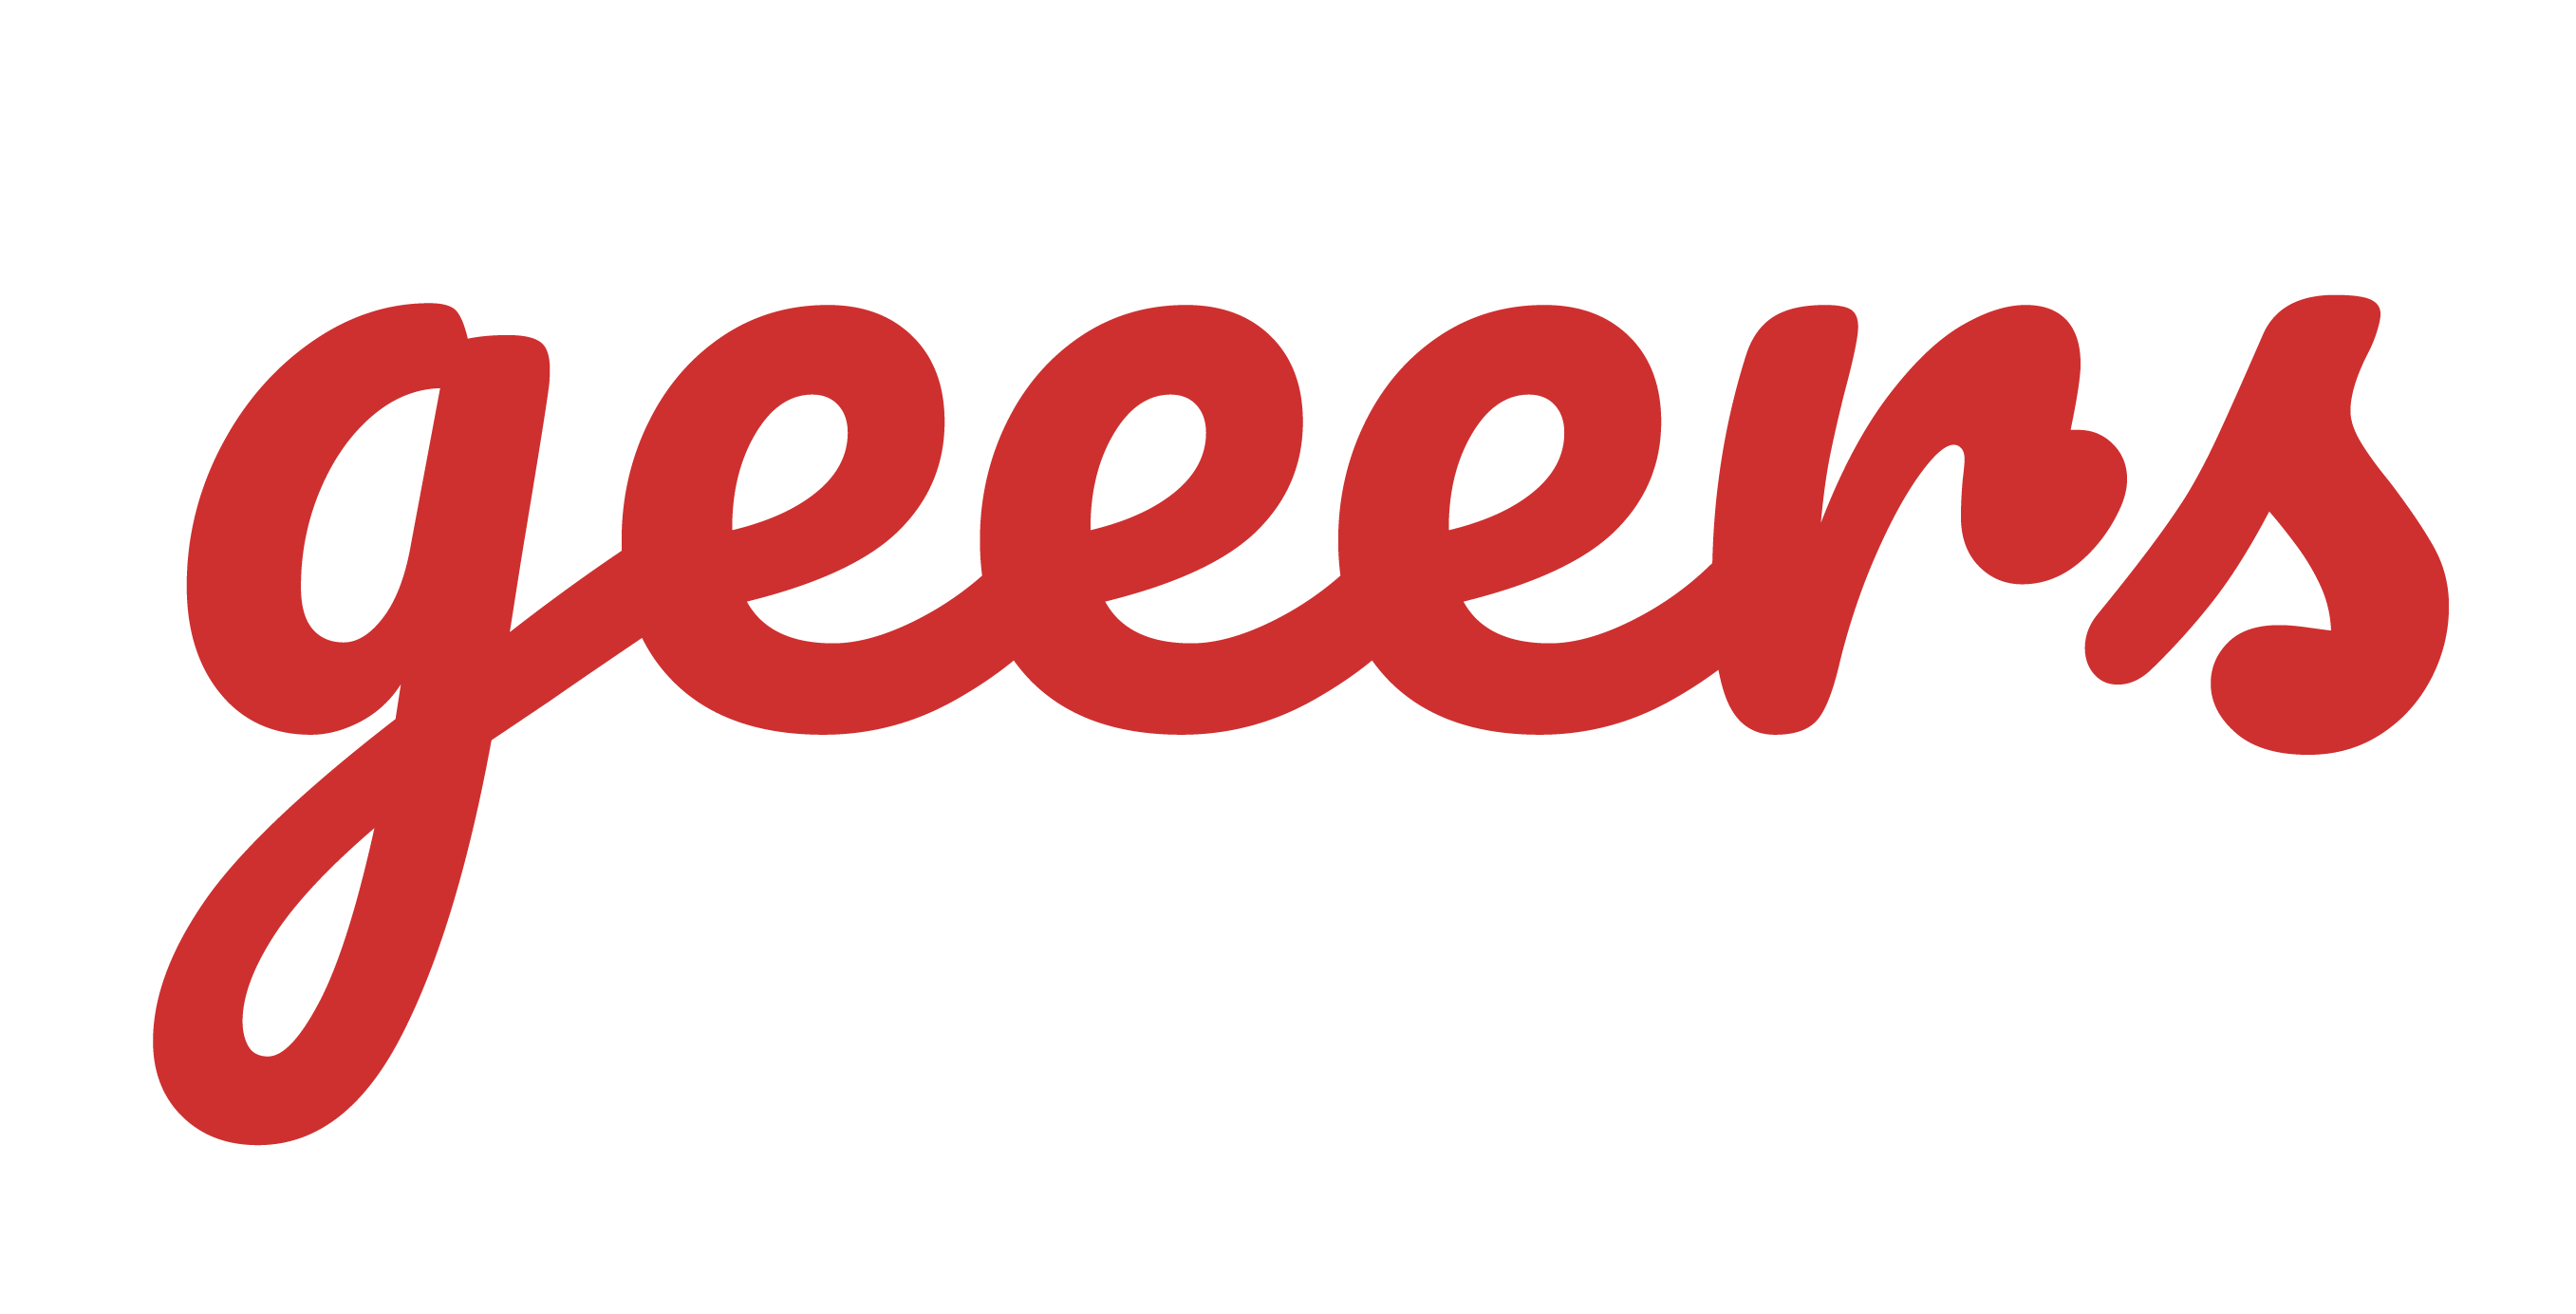 Logo adherent Geeers Technologies